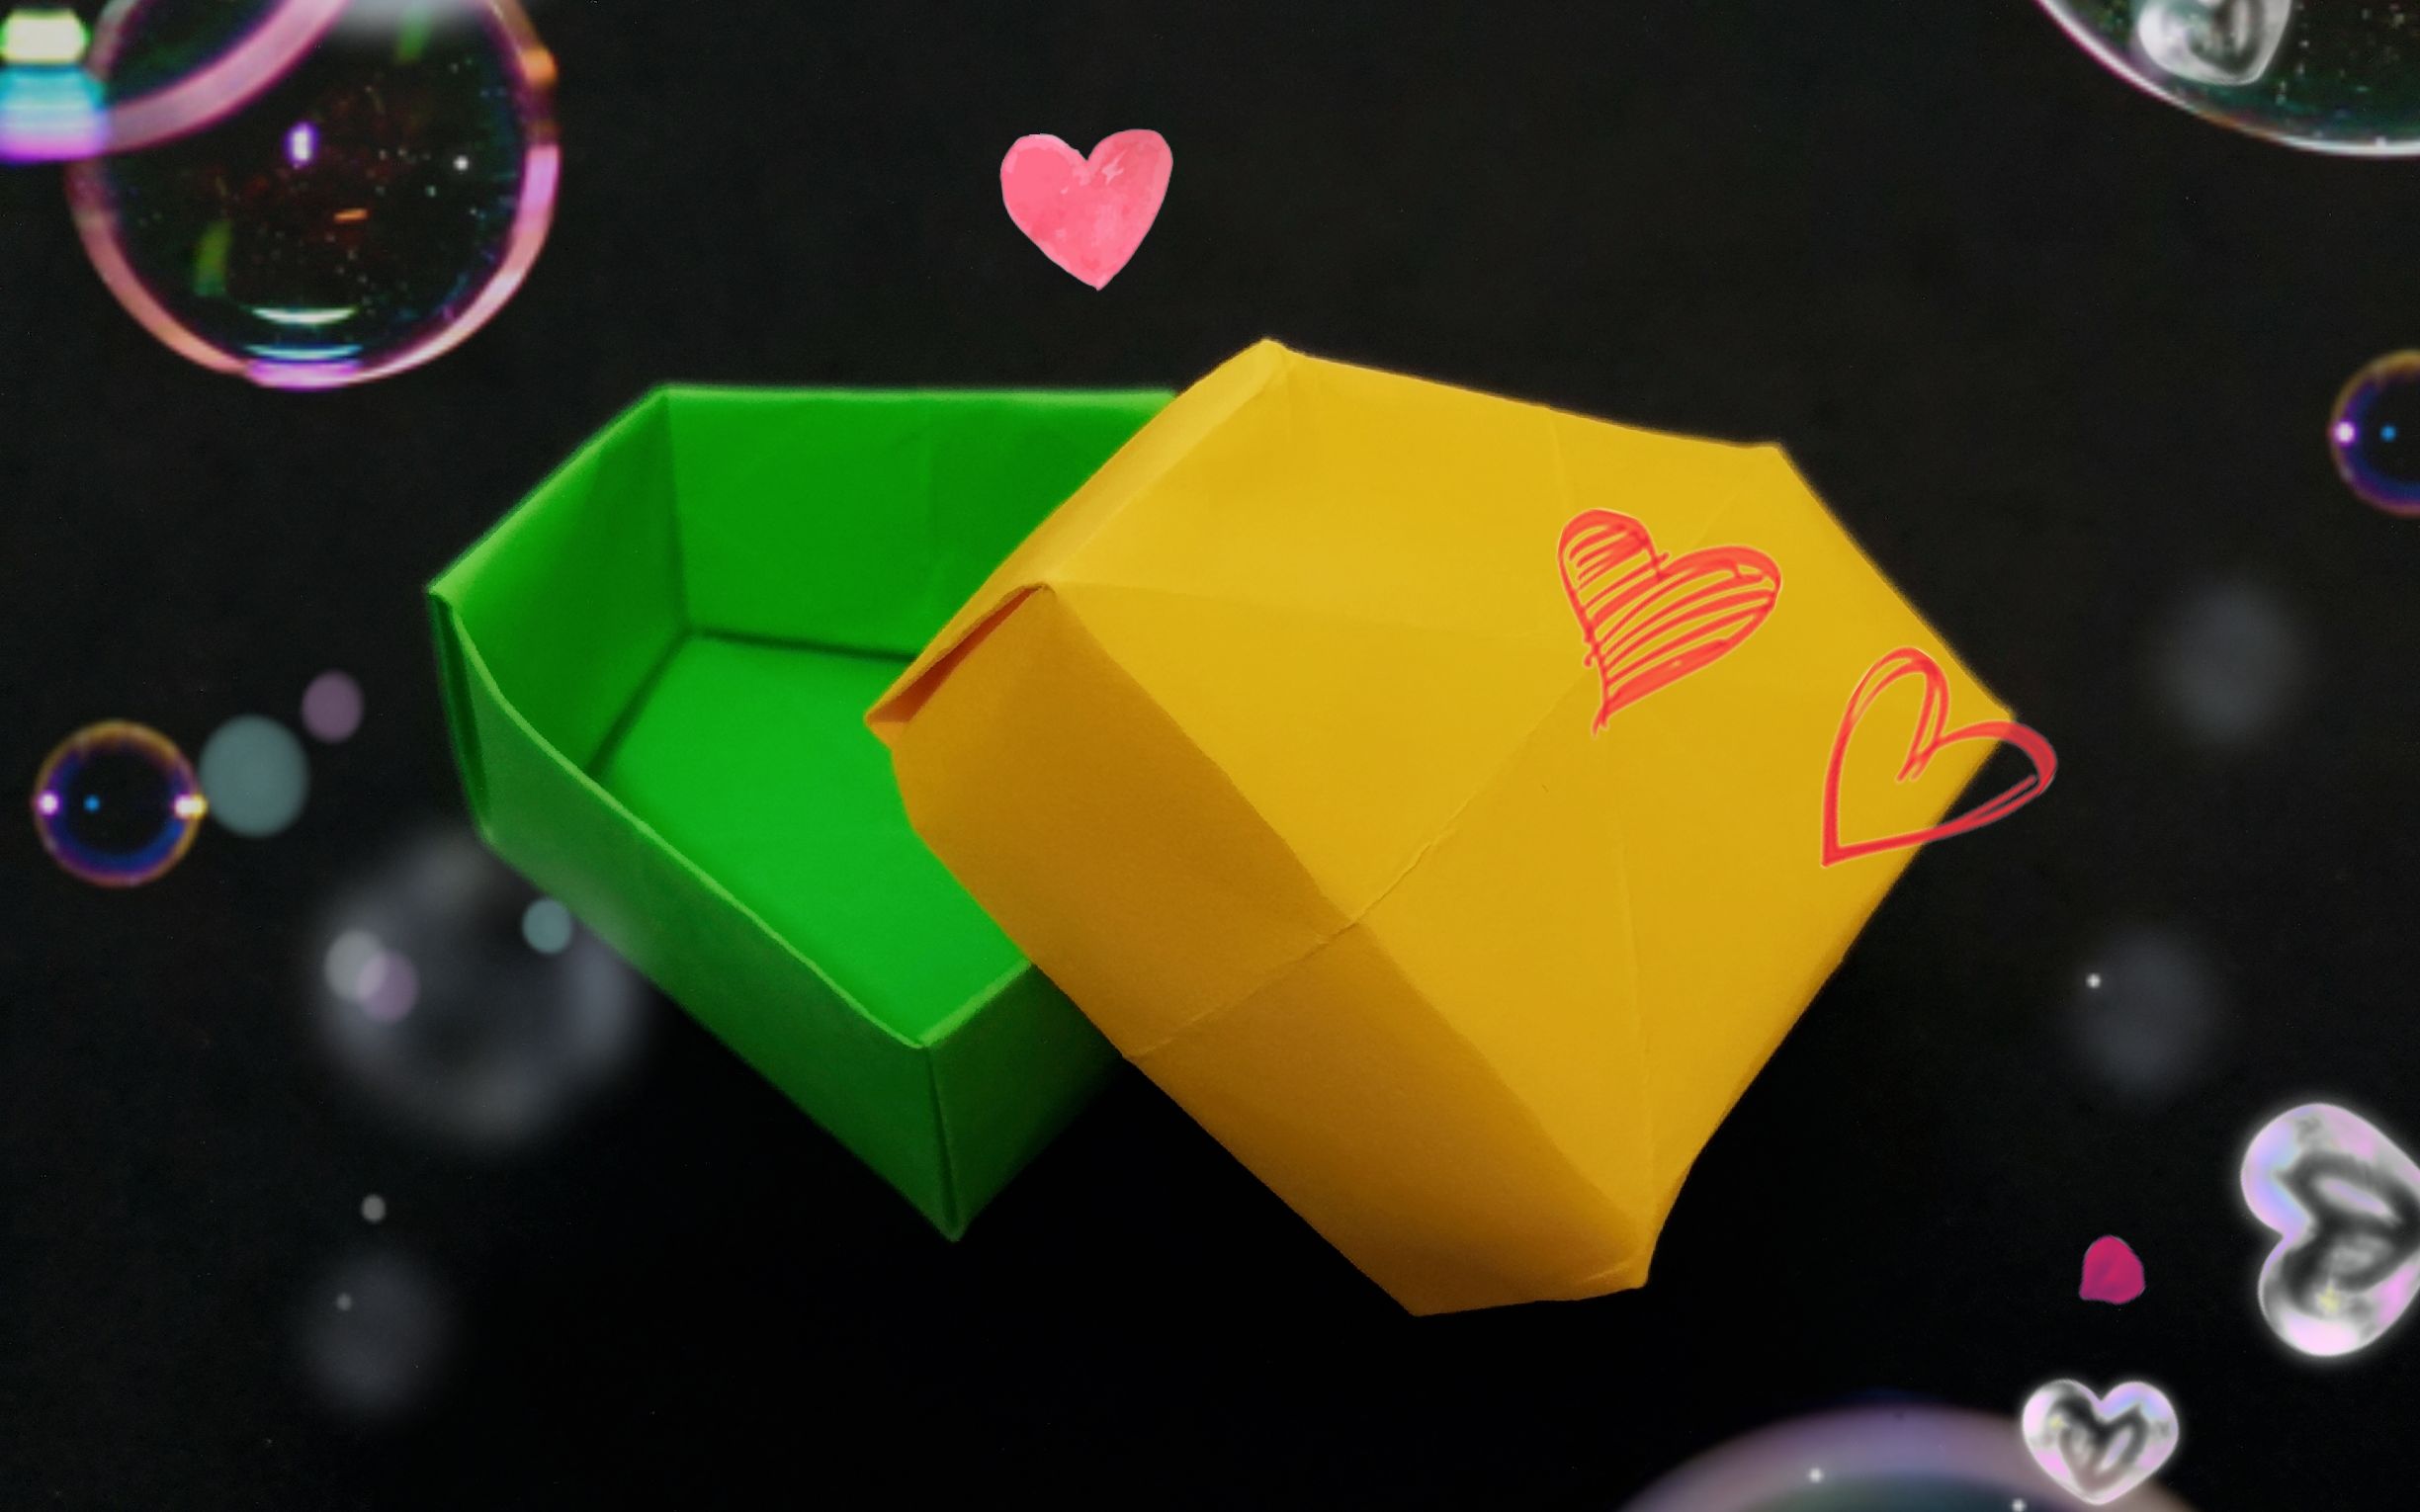 钻石盒子立体的折法图片